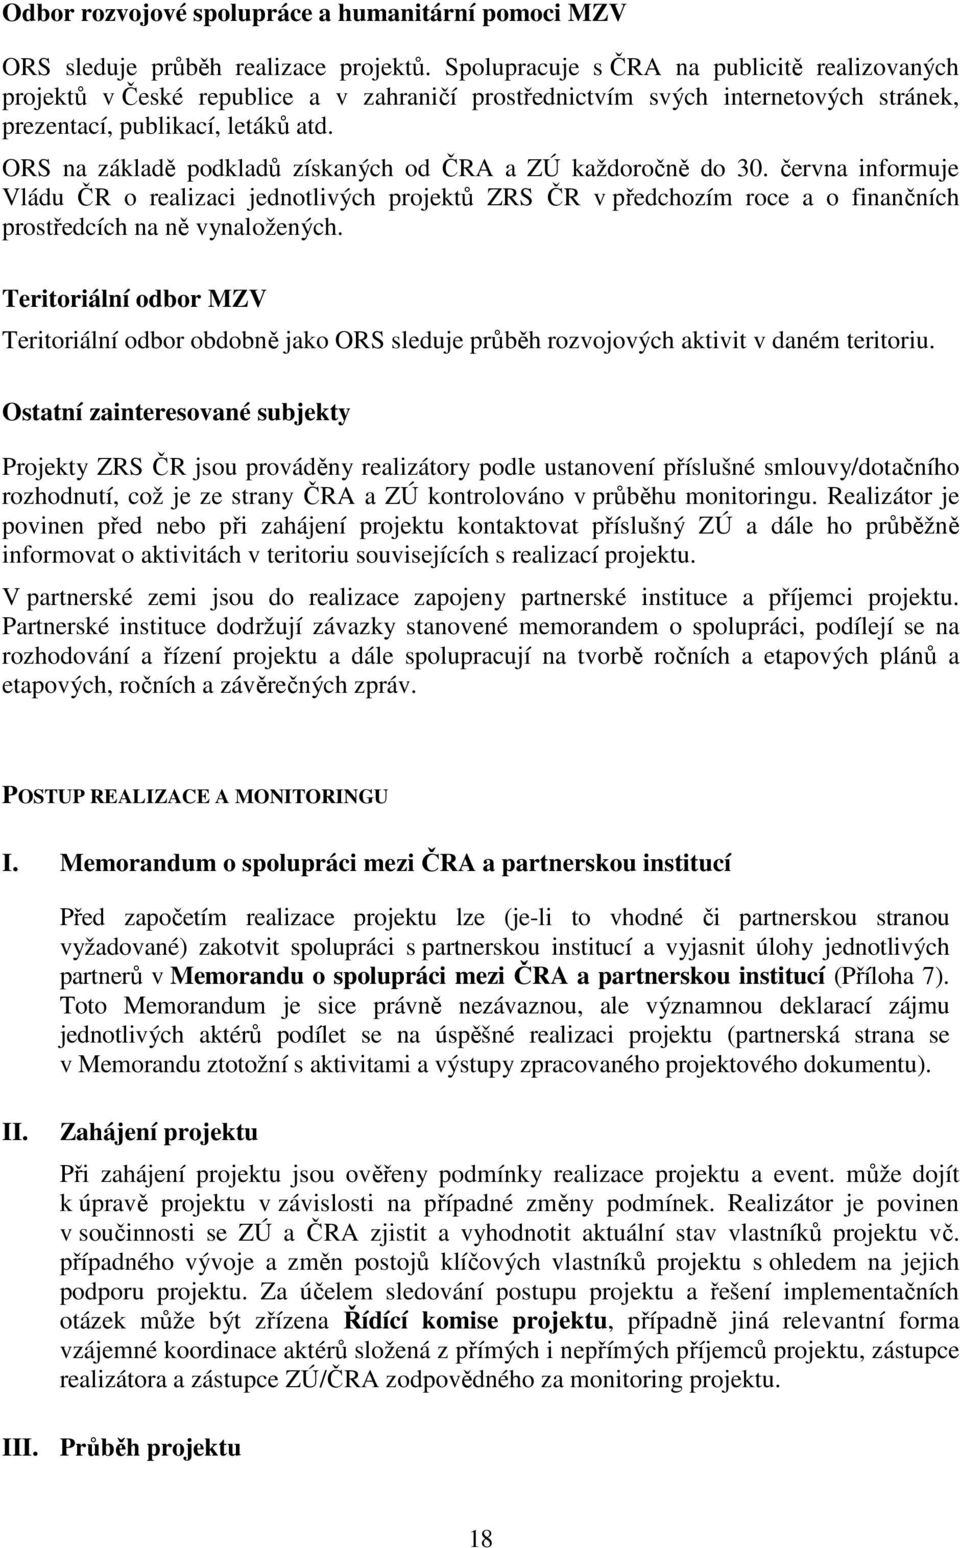 ORS na základě podkladů získaných od ČRA a ZÚ každoročně do 30. června informuje Vládu ČR o realizaci jednotlivých projektů ZRS ČR v předchozím roce a o finančních prostředcích na ně vynaložených.